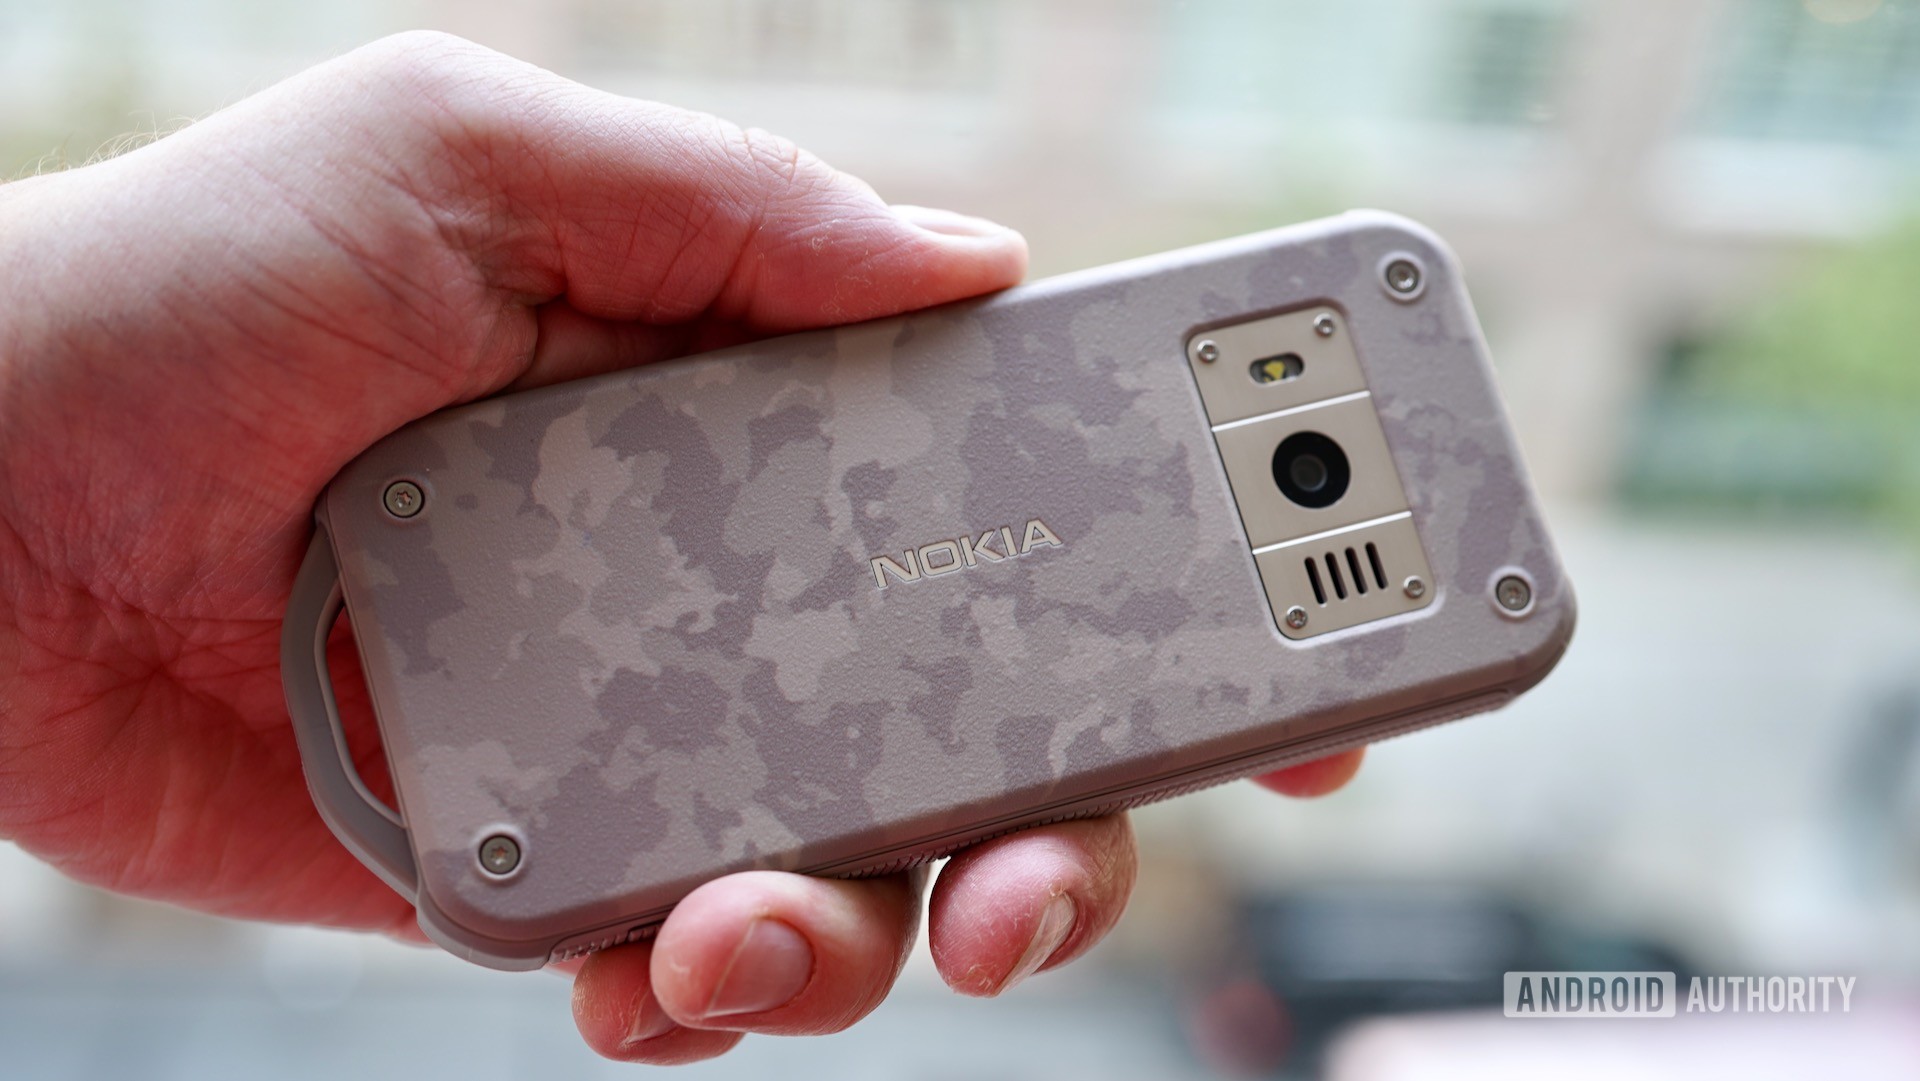 Chi tiết về chiếc điện thoại siêu bền Nokia 800 Tough 4G: IP68, bảo vệ chống rơi lên đến 1,8 mét